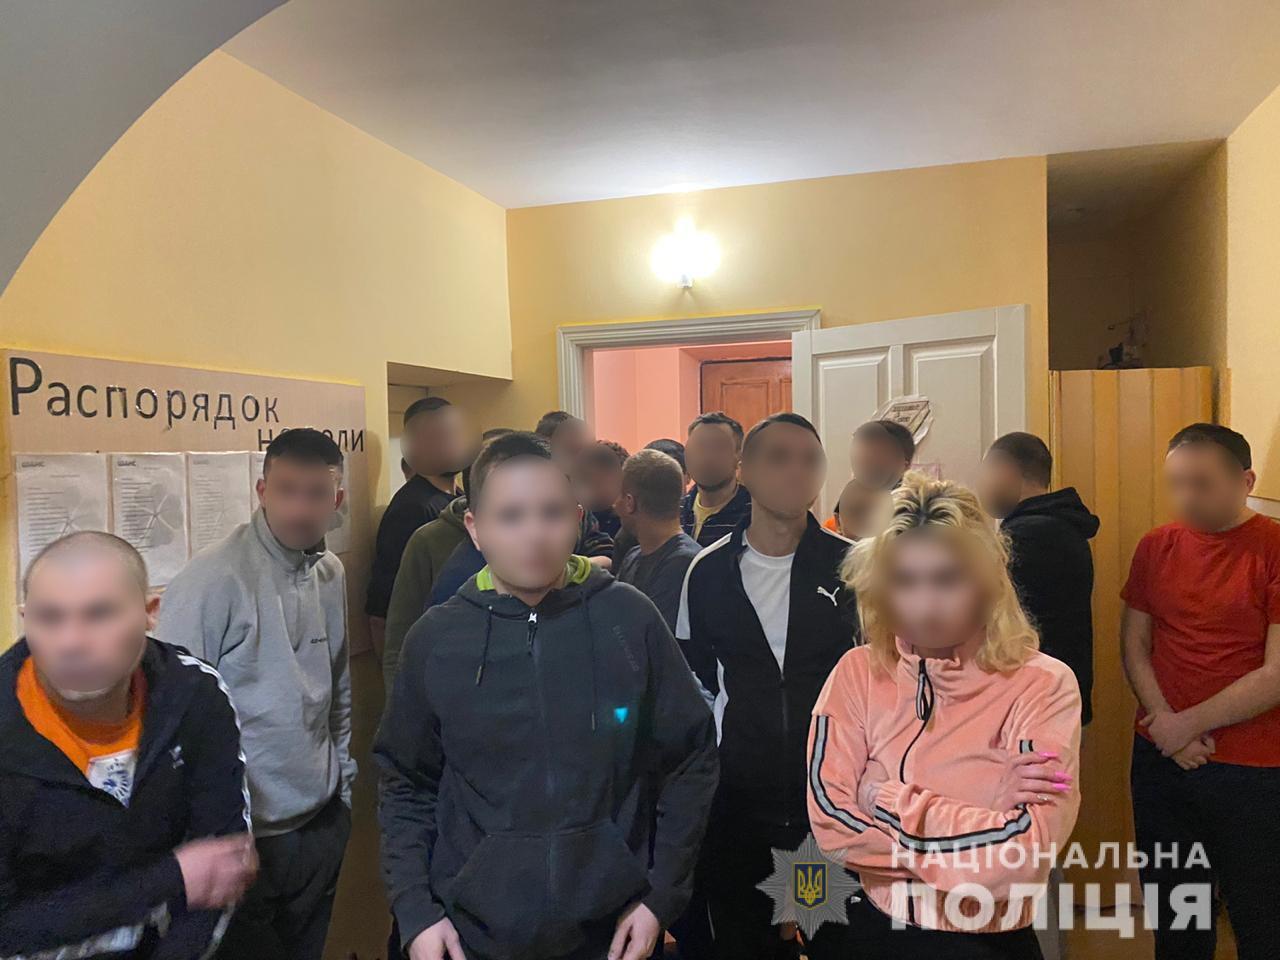 В Киевской области массово похищали людей для пыток